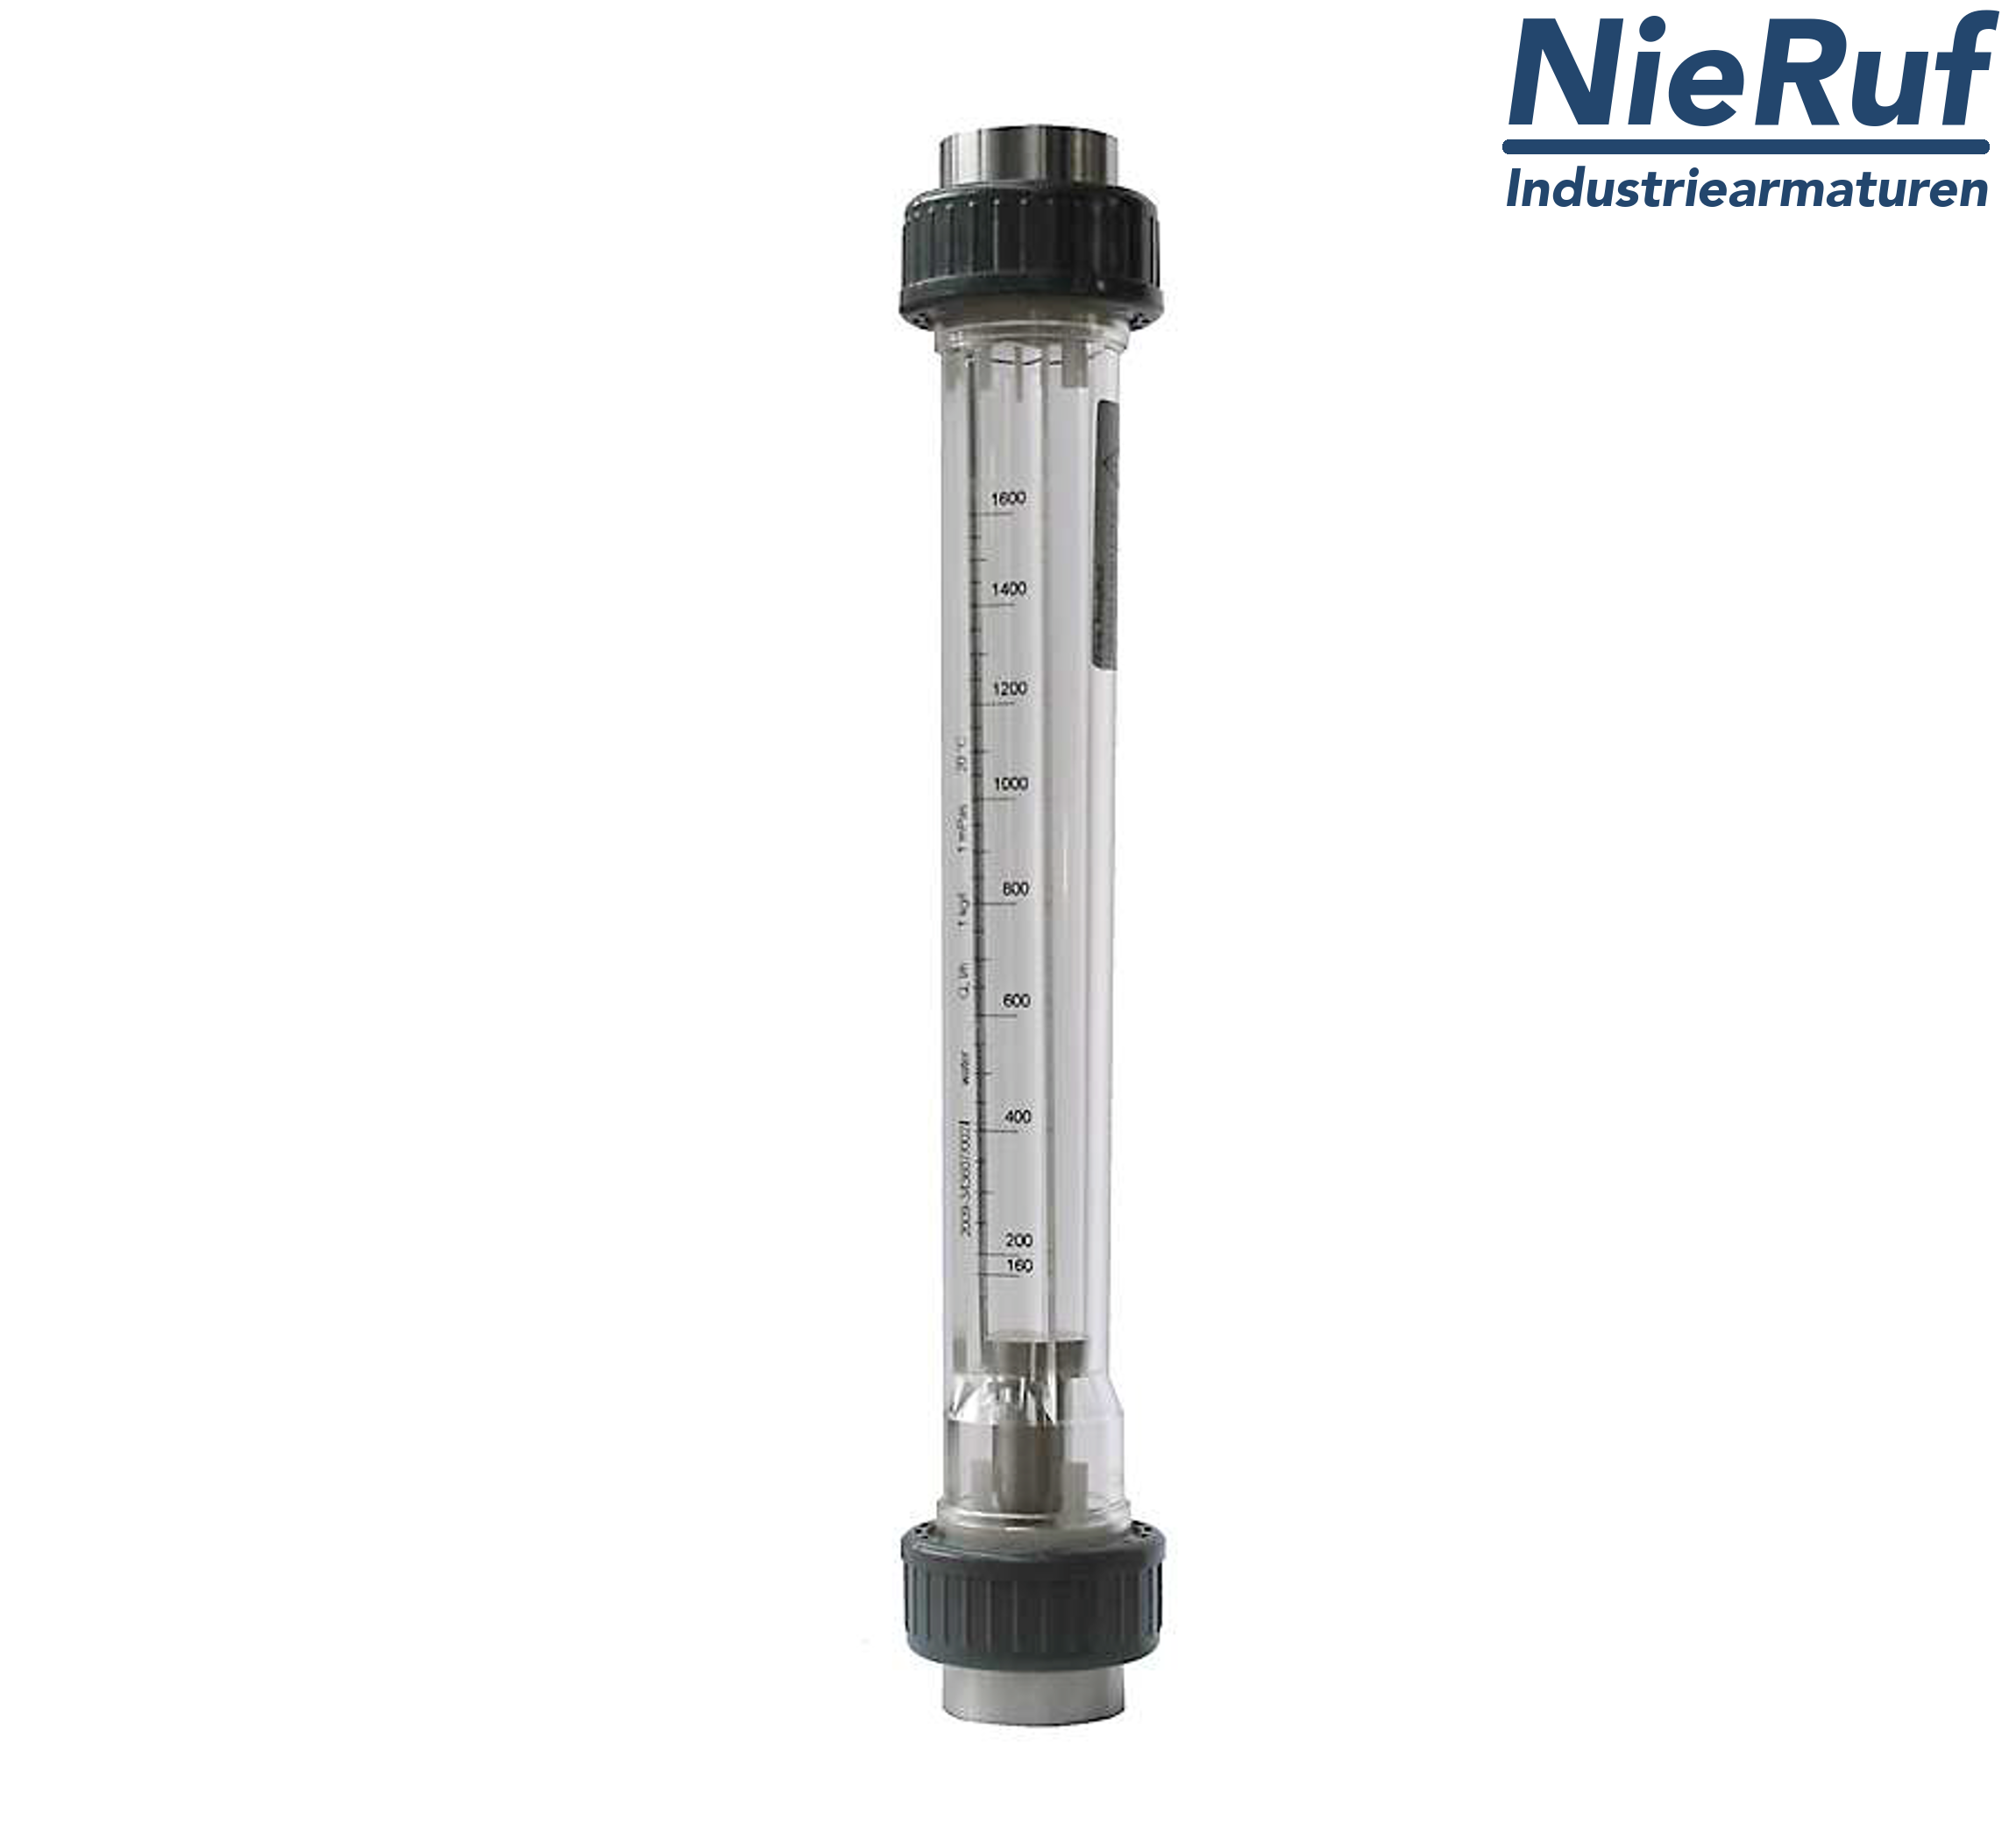 débitmètre à flotteur 1" pouce NPT 160,0 - 1600 l/h eau NBR